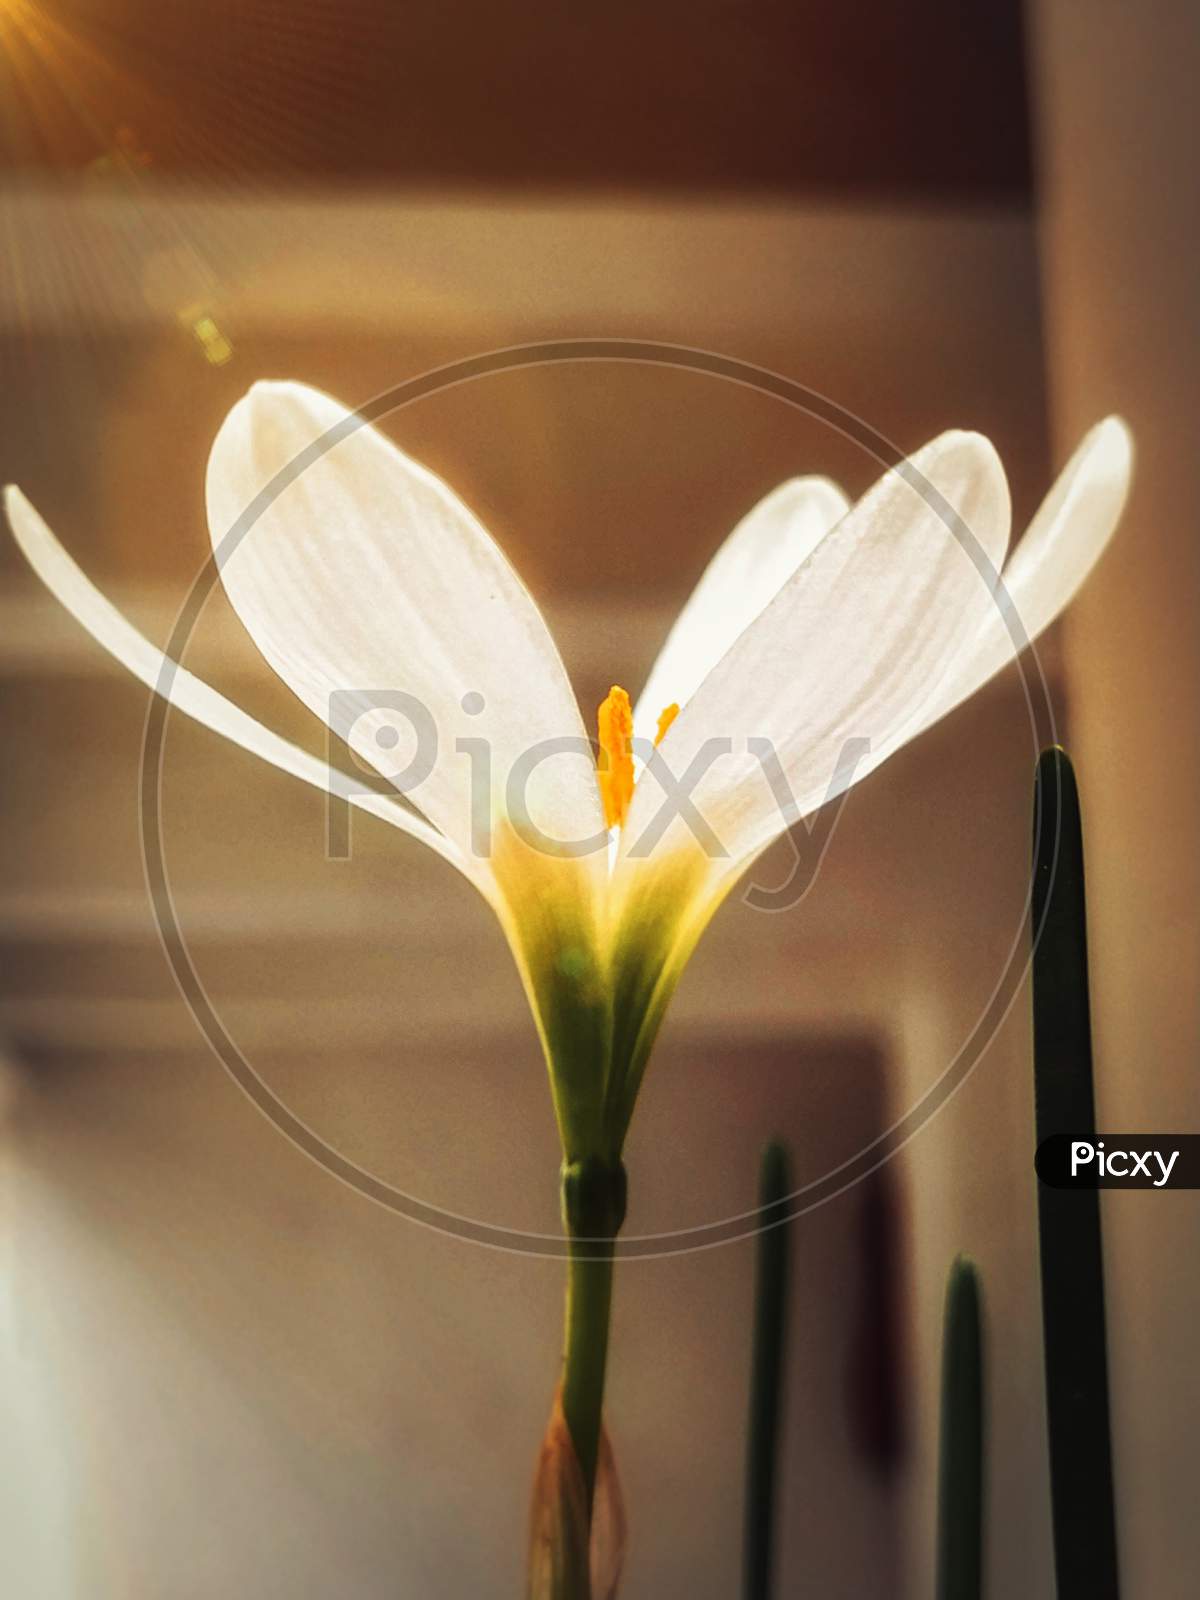 Flared lili